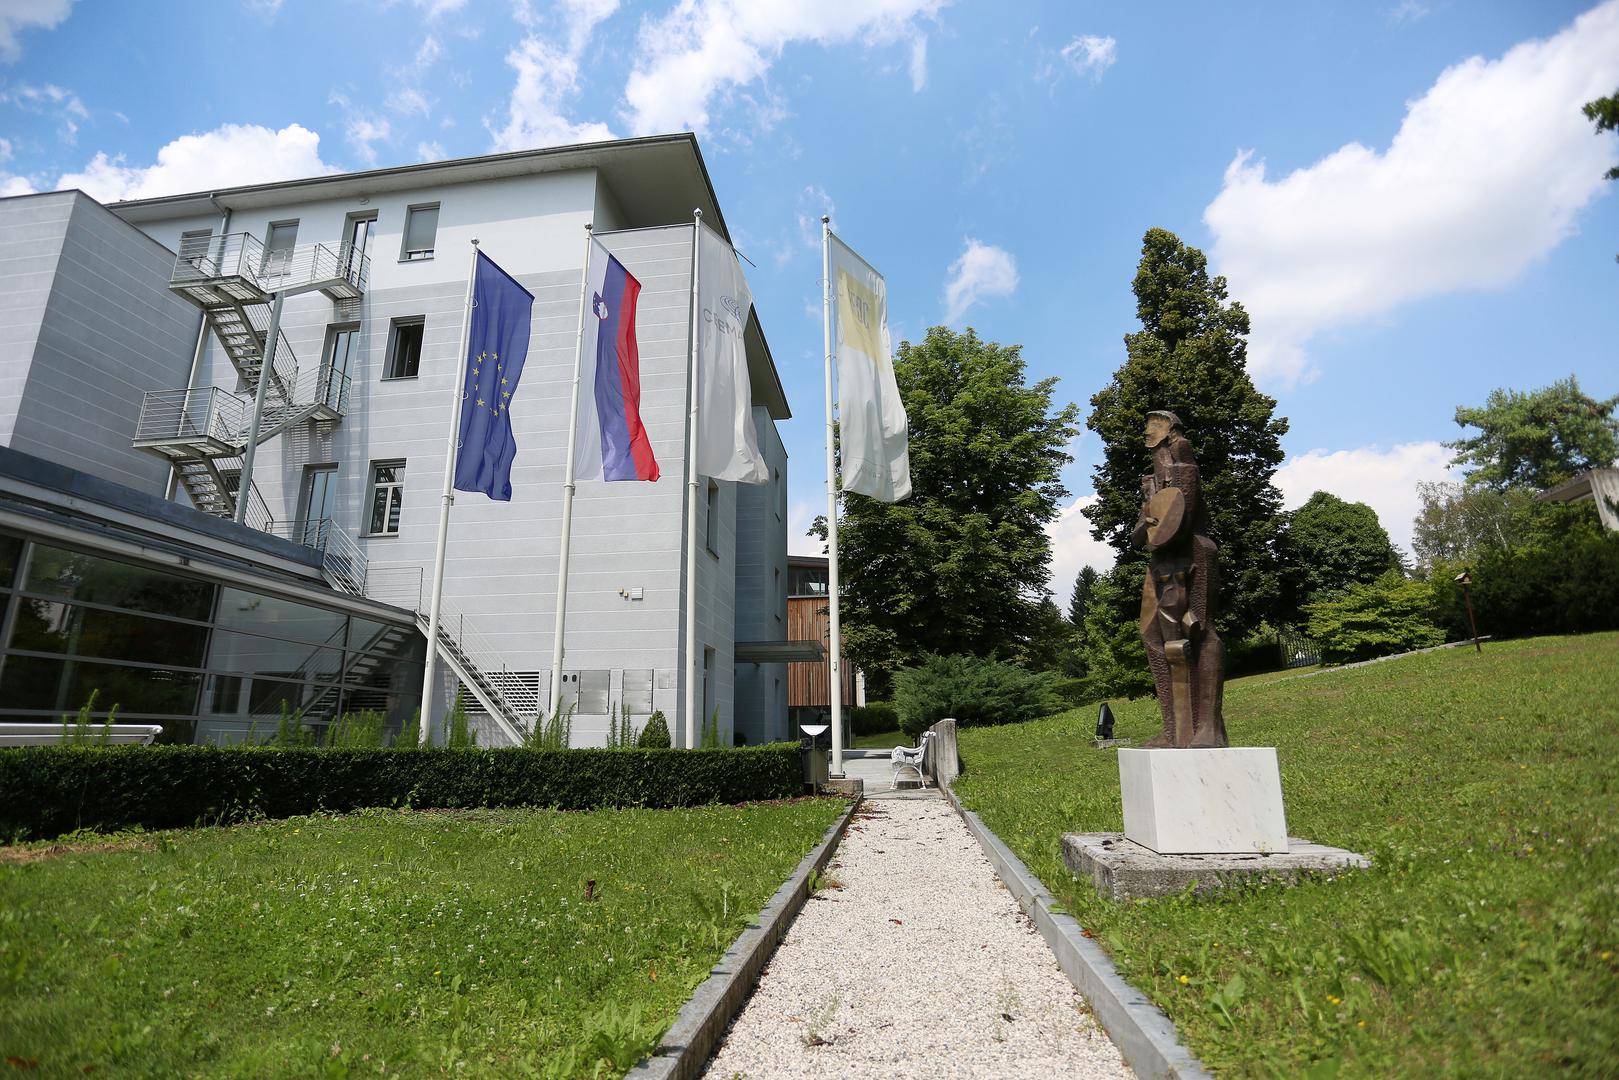 IEDC - Poslovna škola Bled je višestruko nagrađivana škola